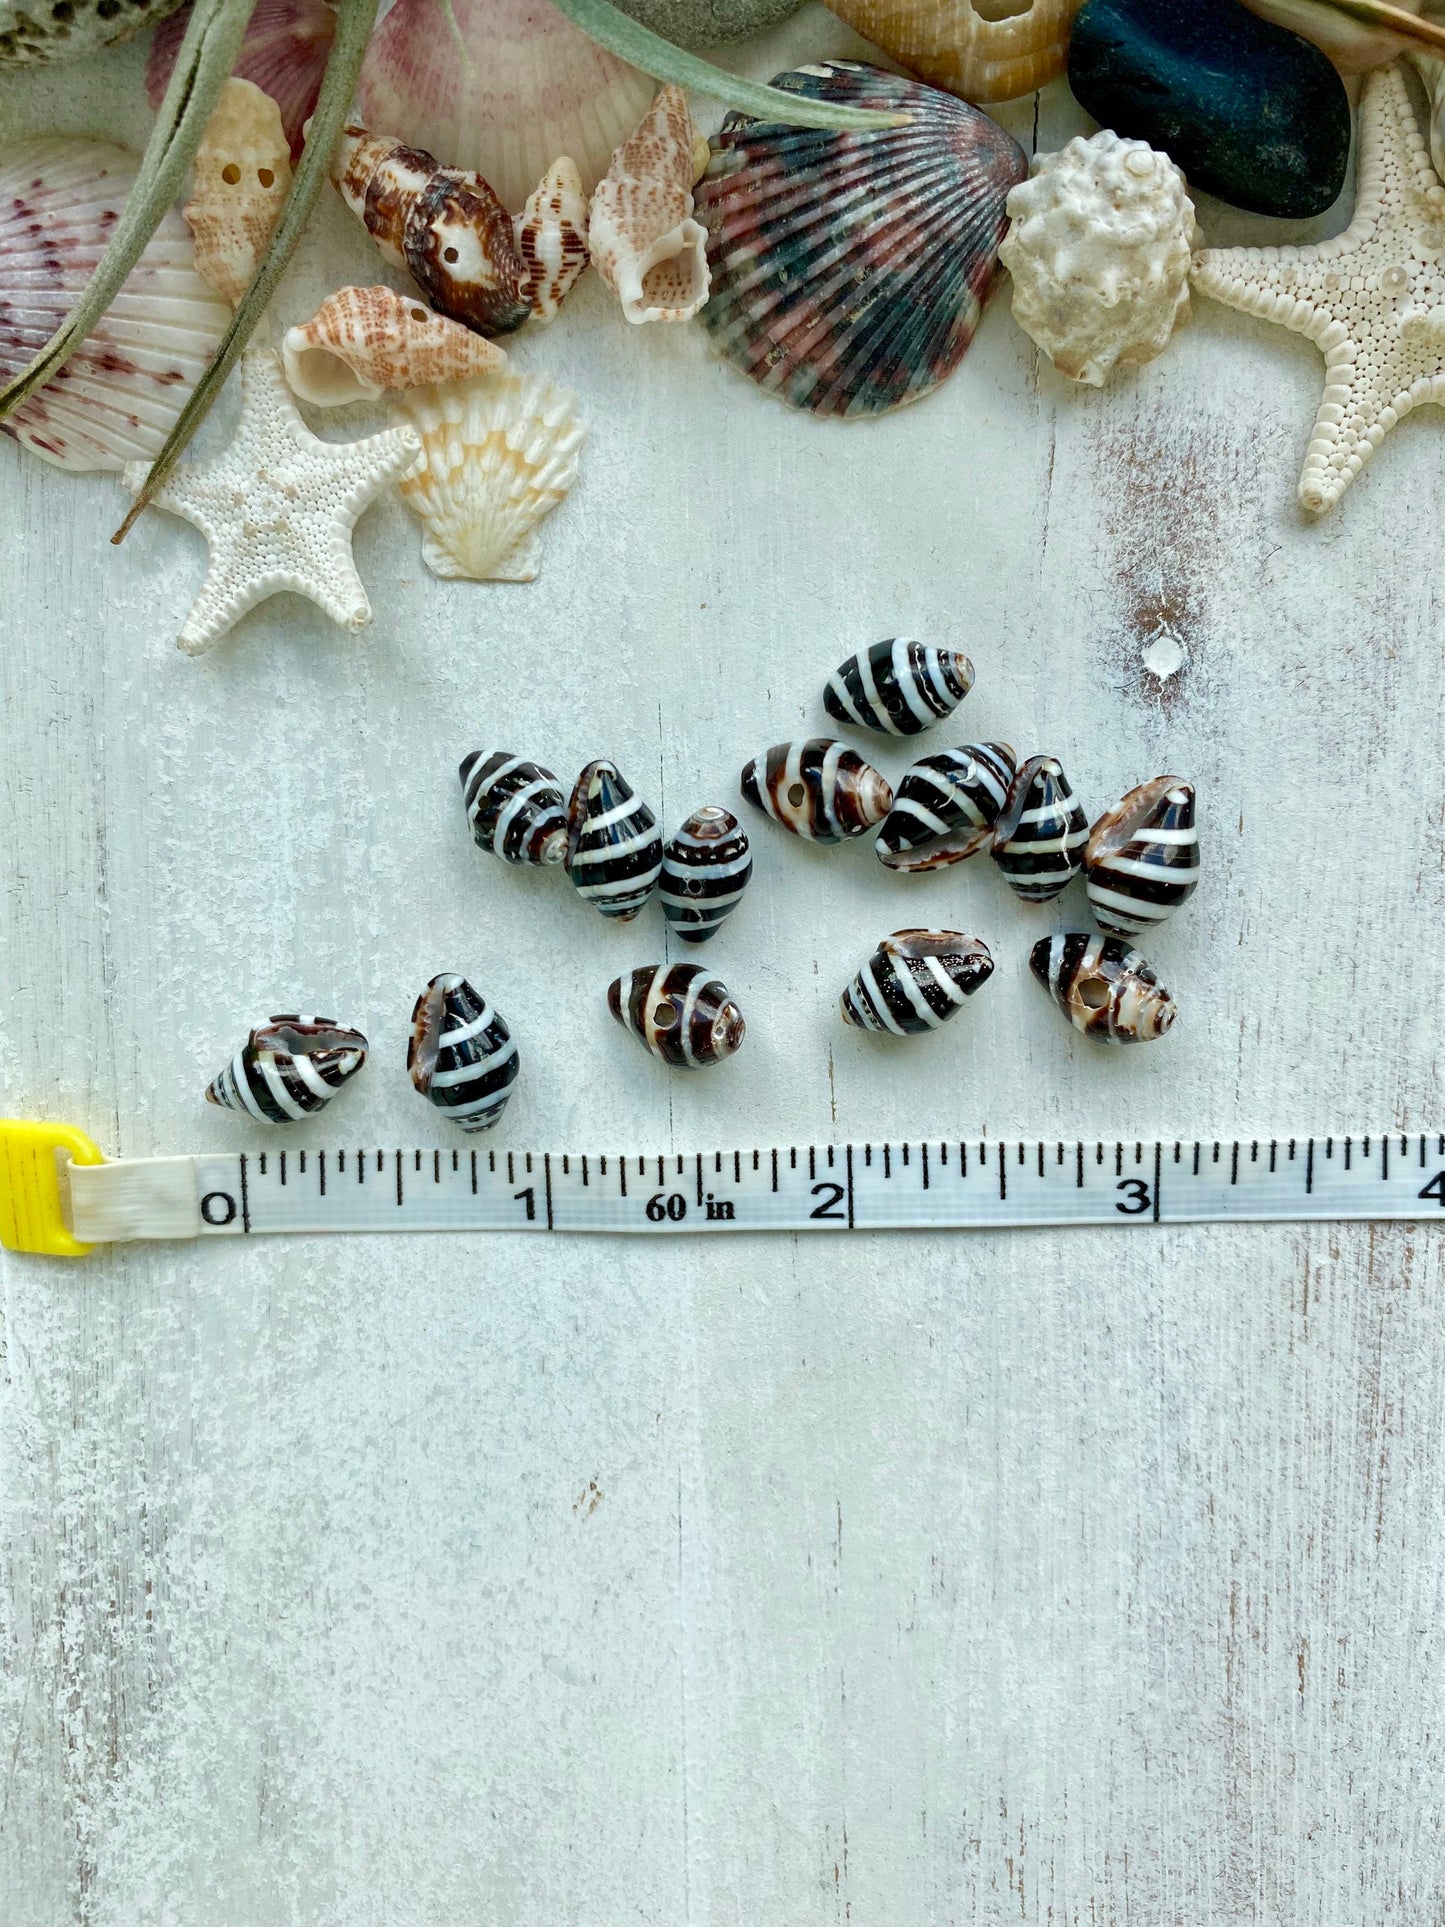 Zebra shell necklace